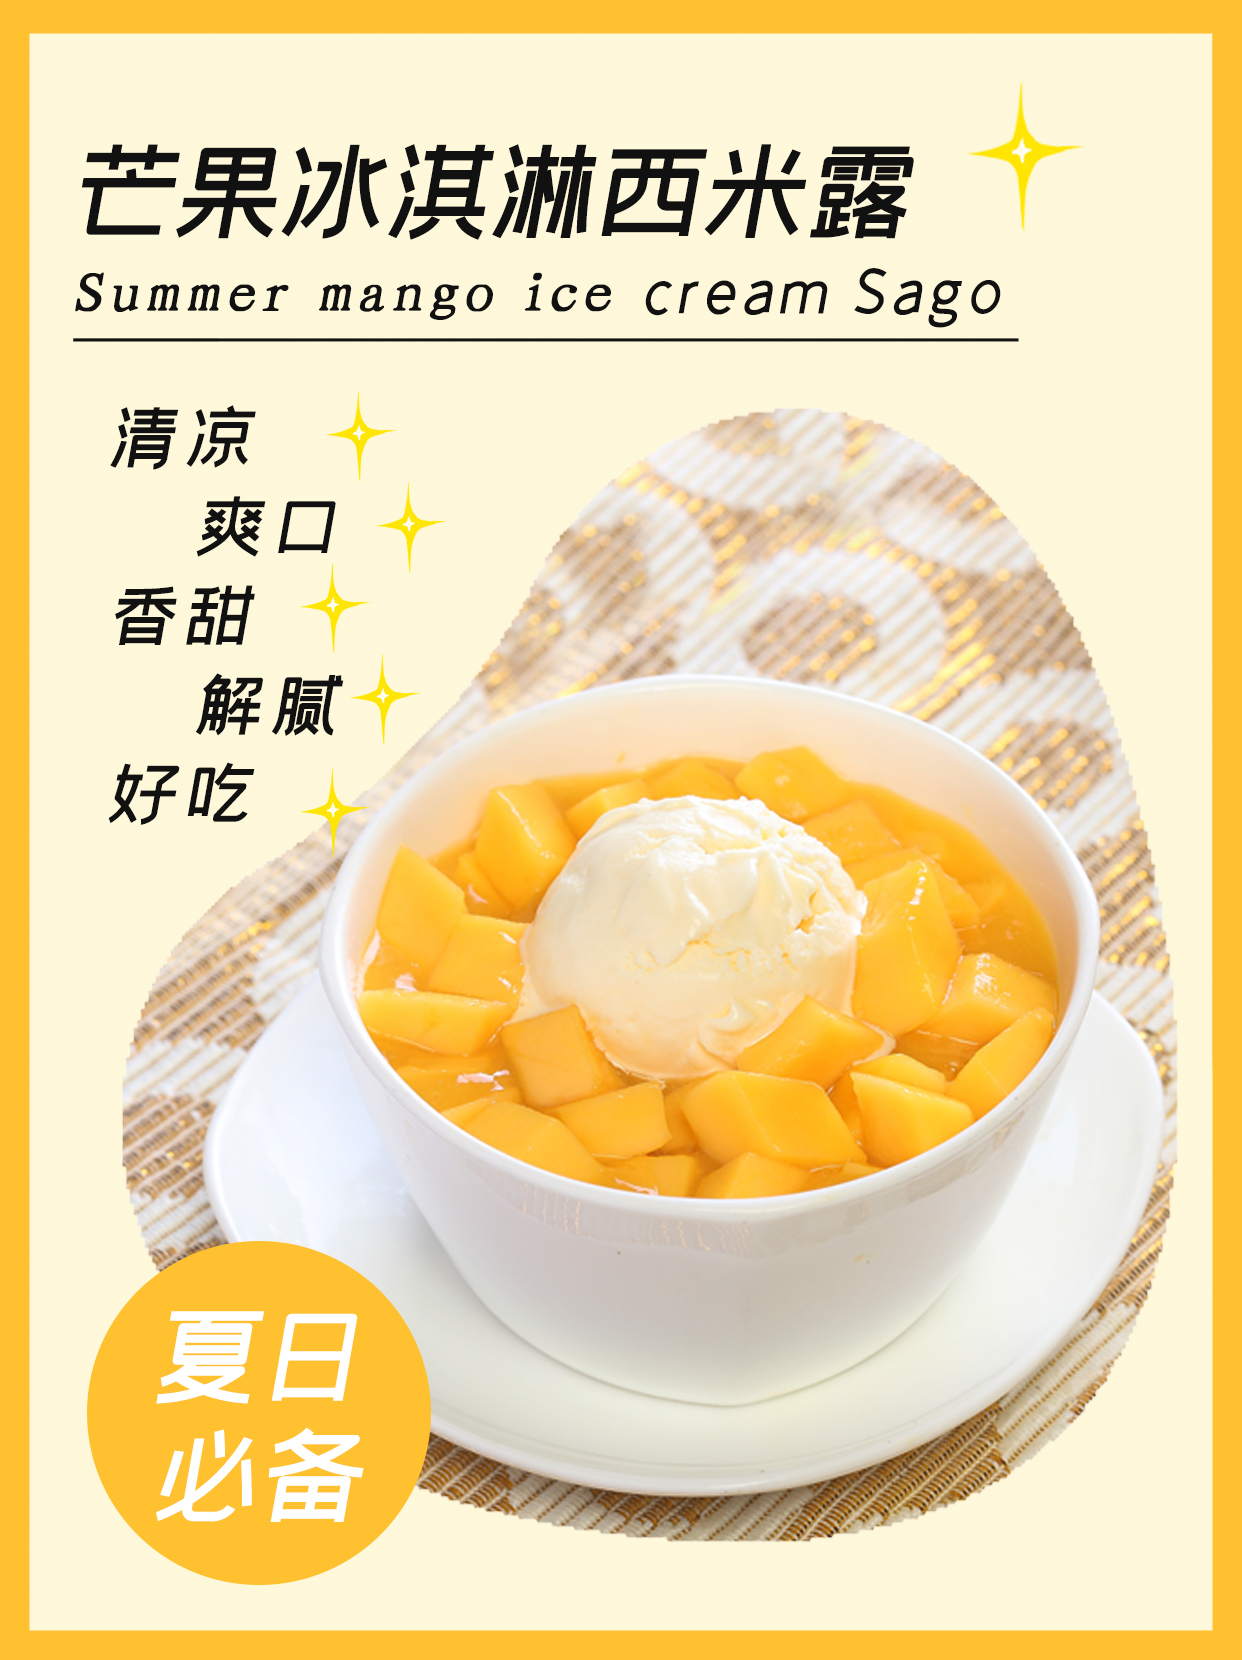 阿波罗甜筒-香草味+芒果味-香港阿波罗（江门）雪糕有限公司